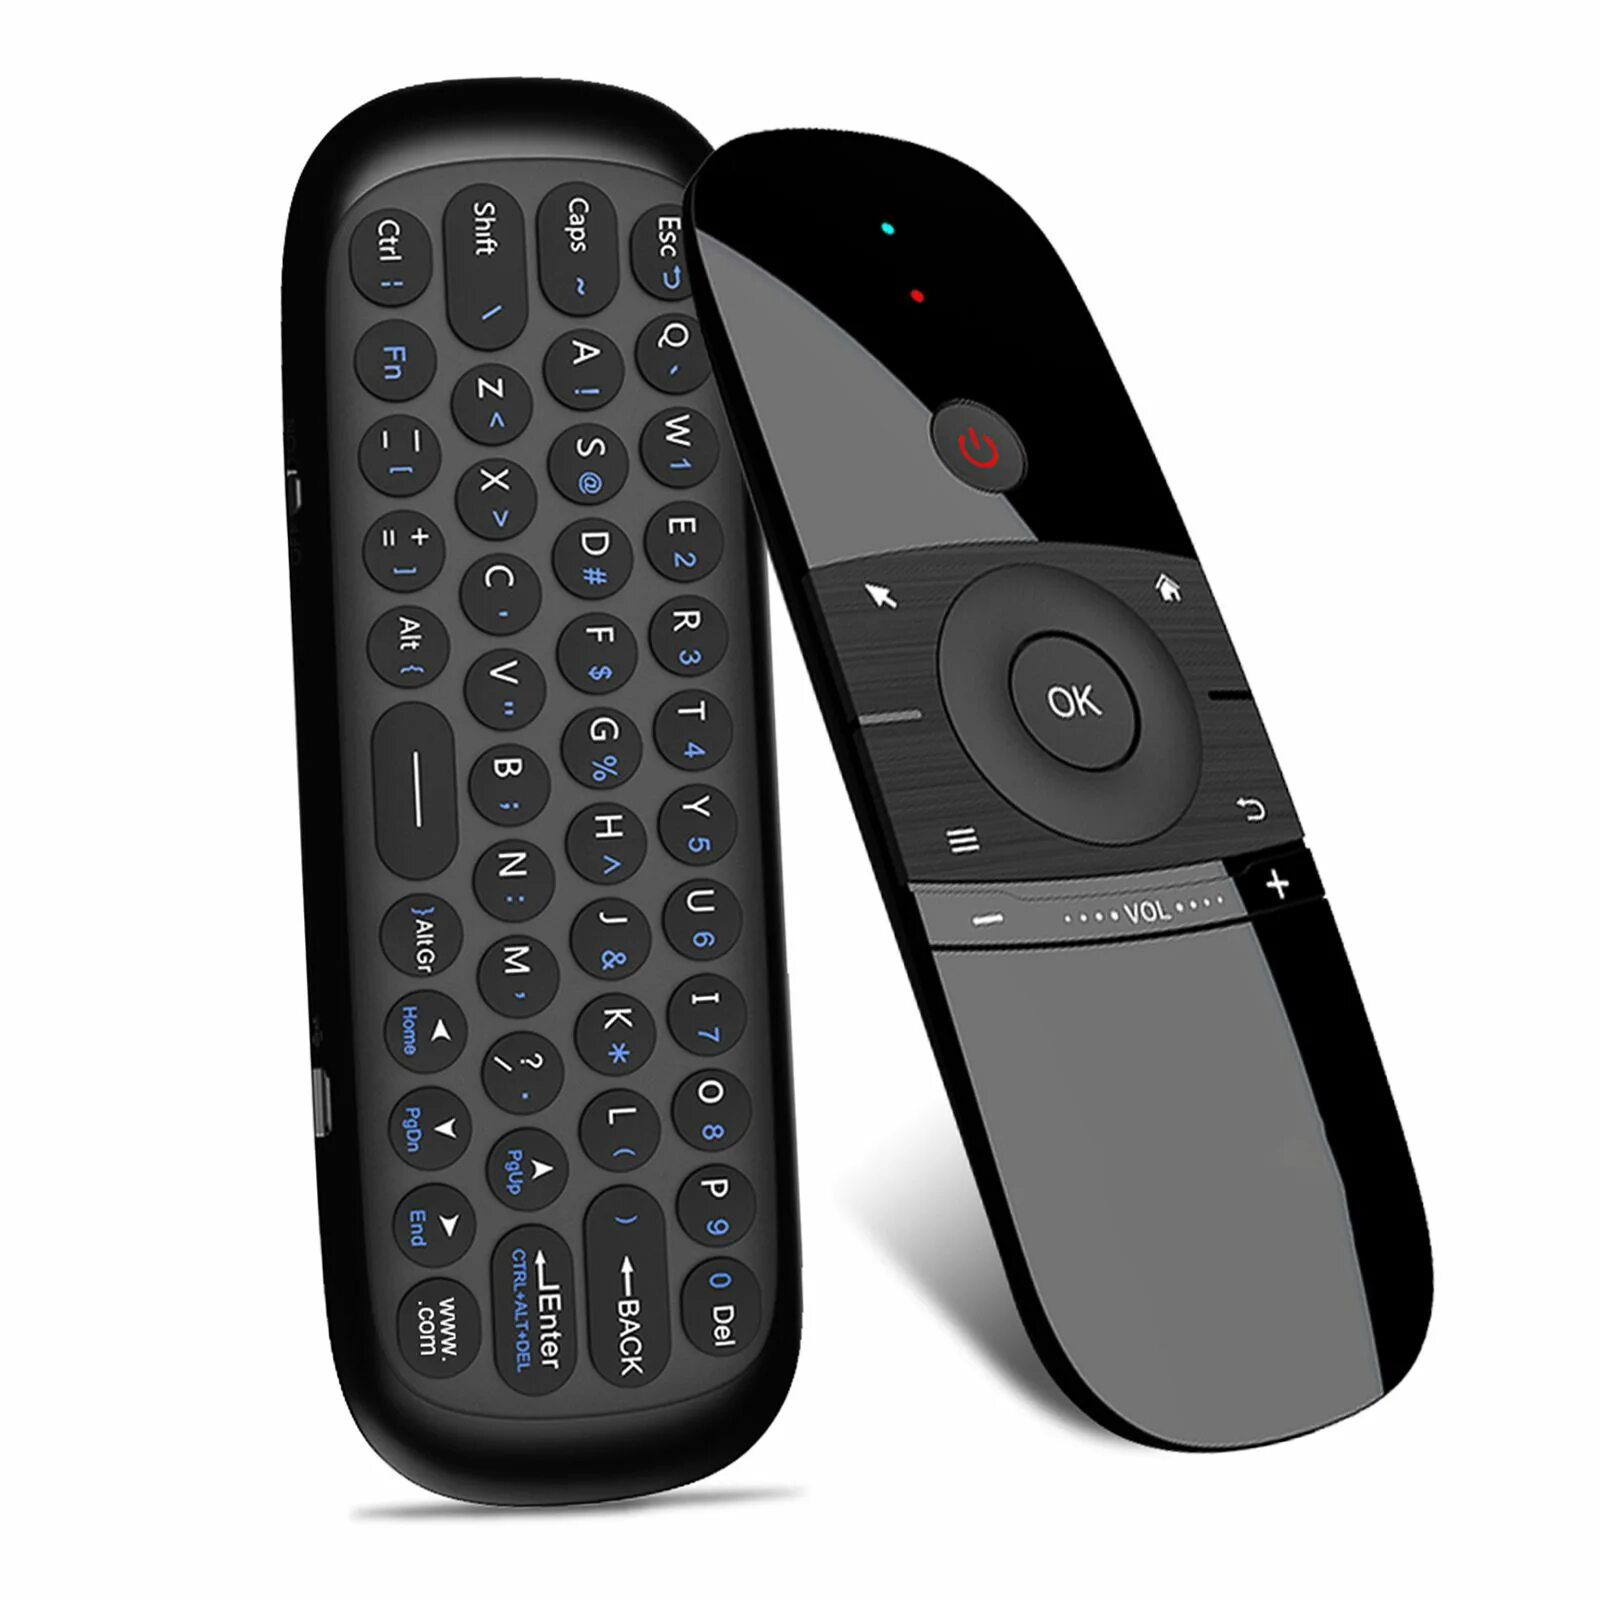 Пульт w1 Air Mouse. W1 2.4g Wireless Keyboard Air Mouse Smart Remote Control for Android TV Box PC. Air Mouse аэромышь w1. Пульт аэромышь для смарт ТВ. Телевизор пульт мышь